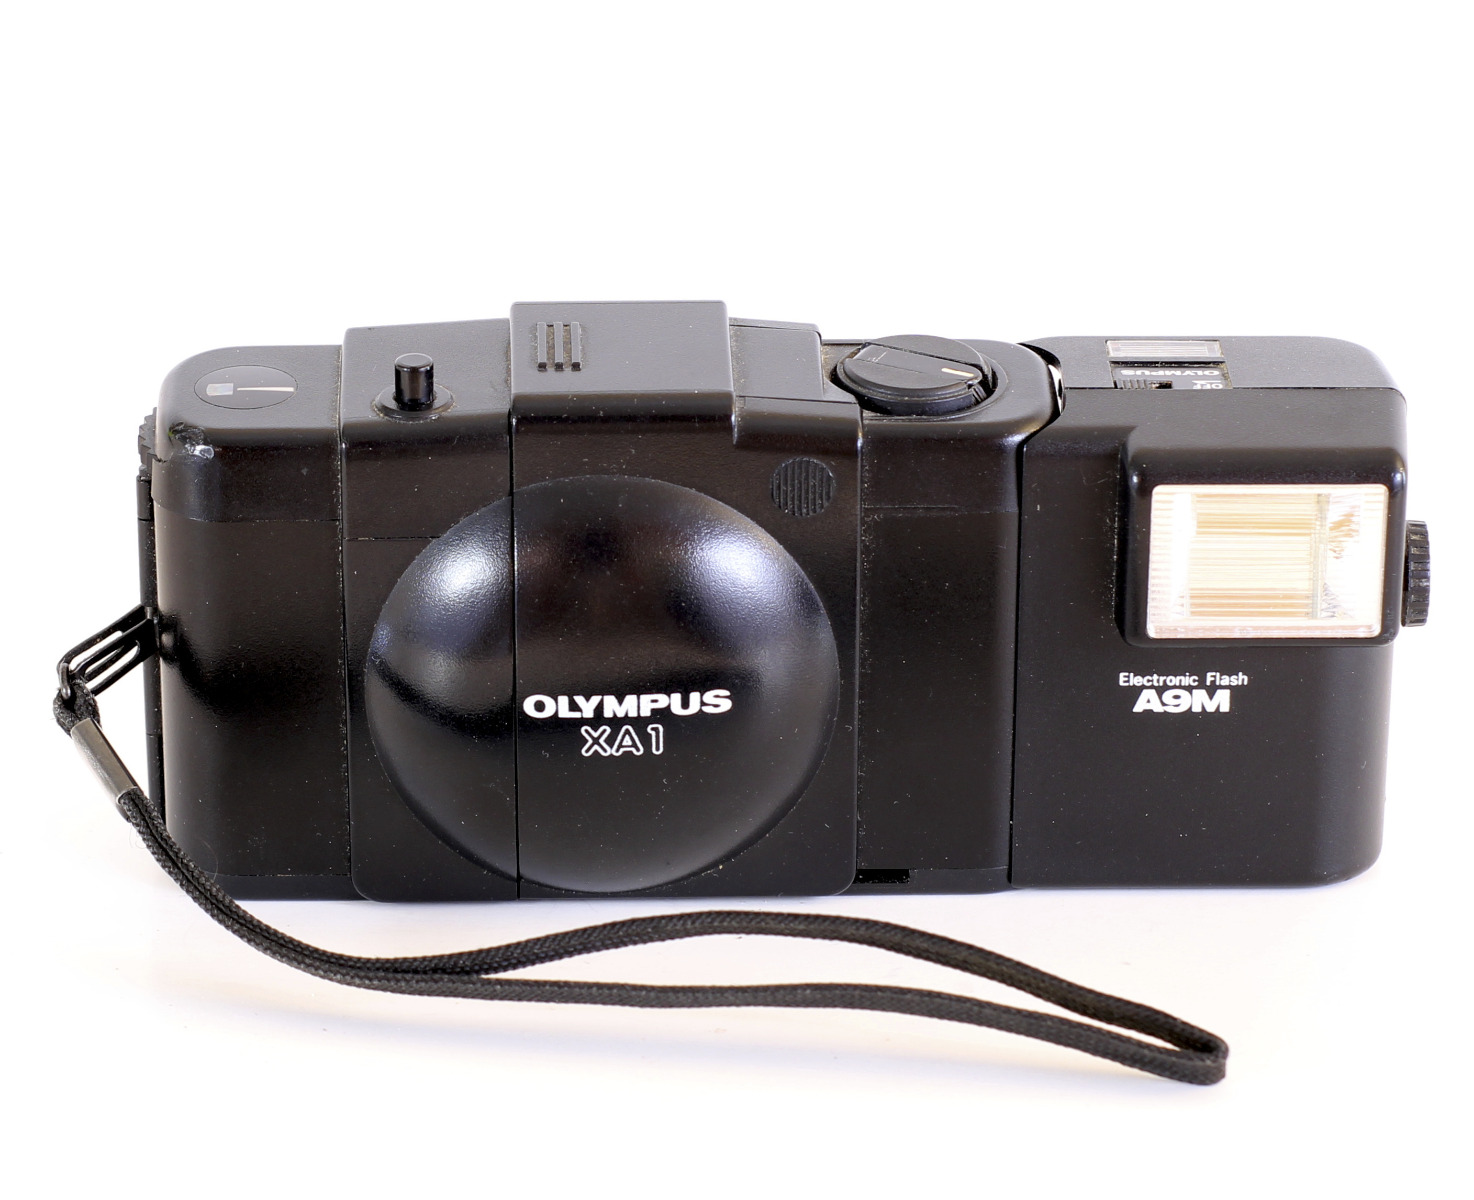 カメラ フィルムカメラ Olympus XA1 35mm Rangefinder Film Camera A9M Electronic Flash